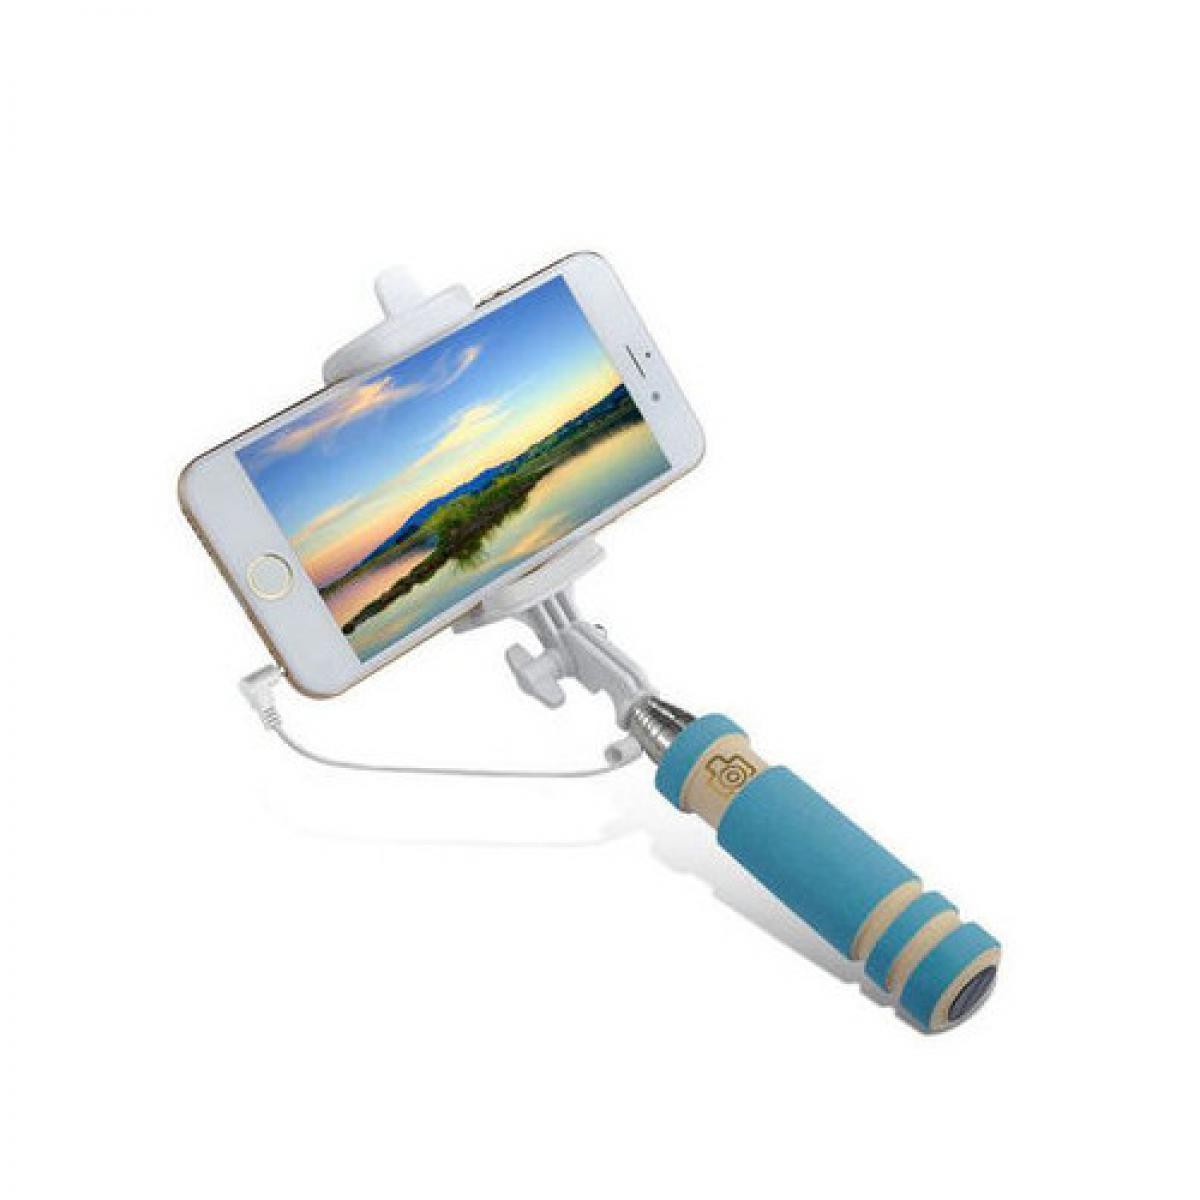 Shot - Mini Perche Selfie pour "IPHONE 12 Mini" avec Cable Jack Selfie Stick IOS Reglable Bouton Photo (BLEU) - Autres accessoires smartphone